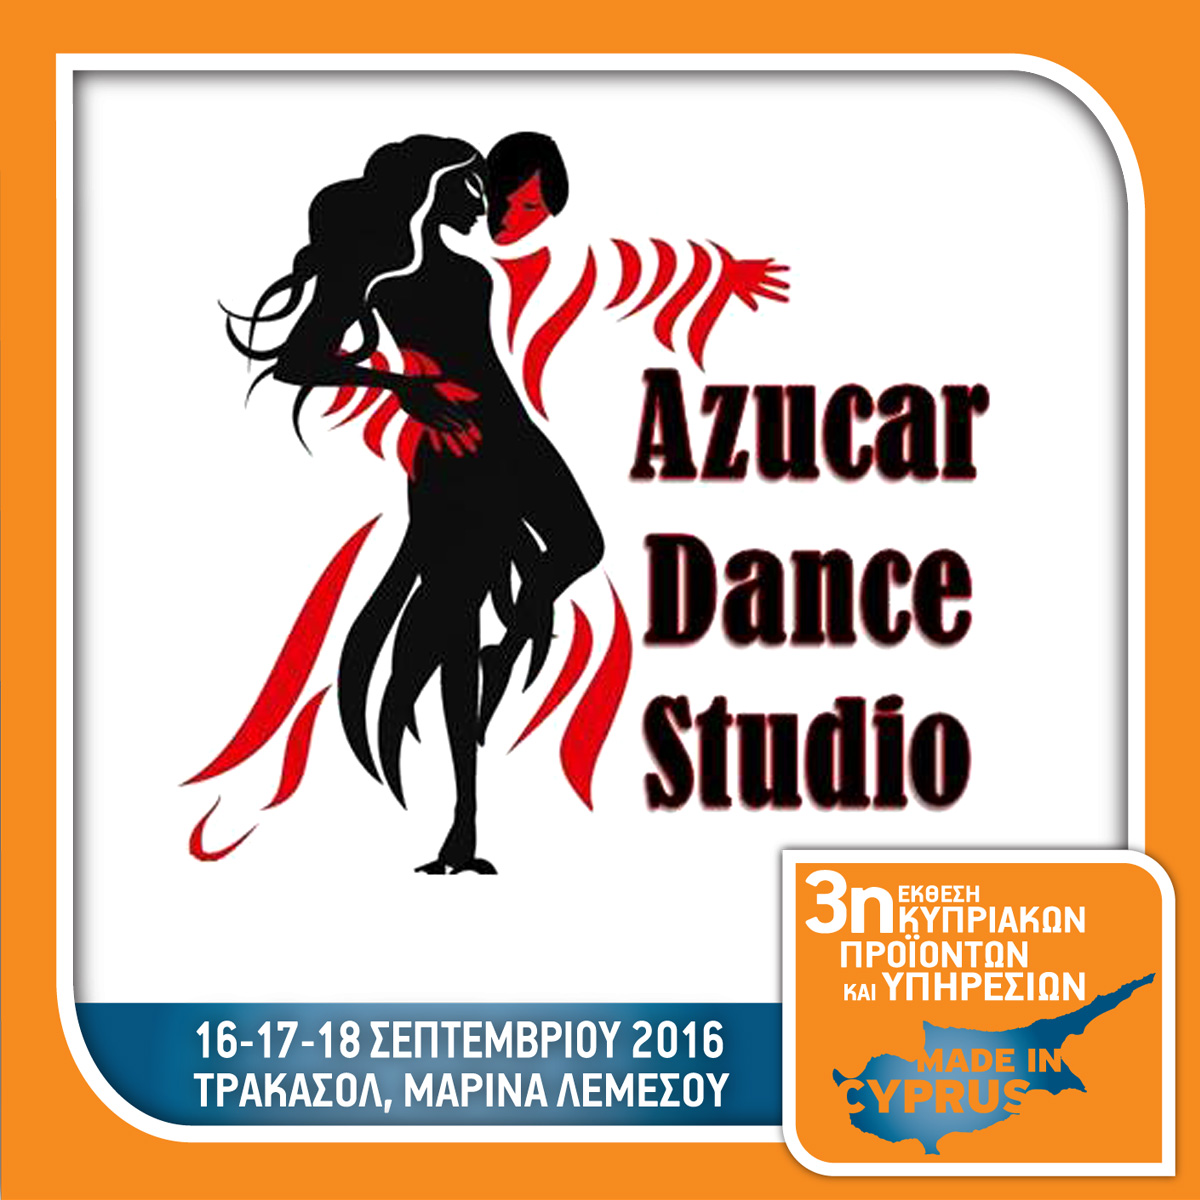 Azucar Dance Studio - Stand No 42